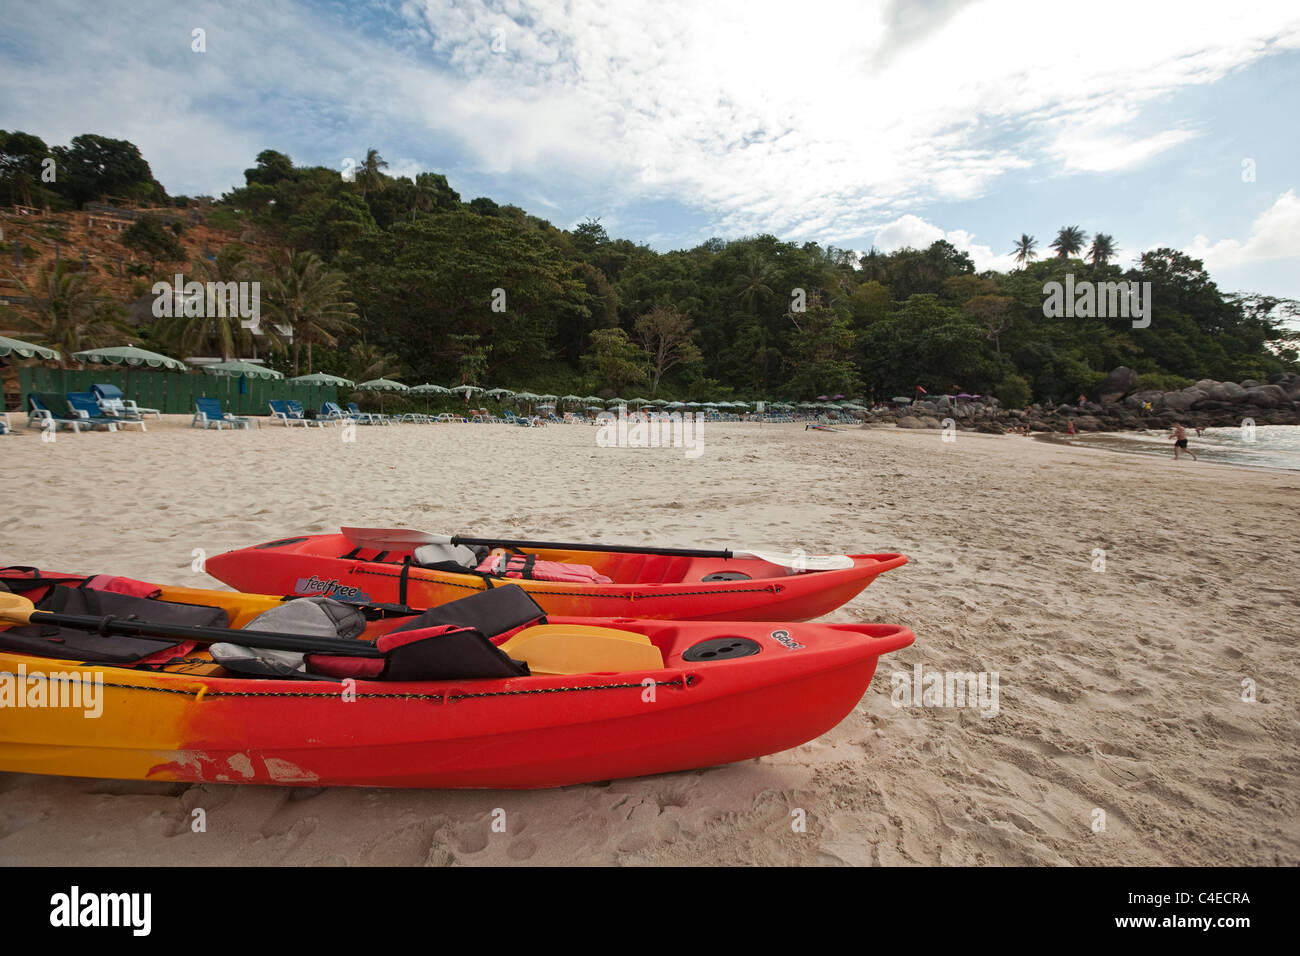 Kata Noi beach, Phuket, Thailand Stock Photo